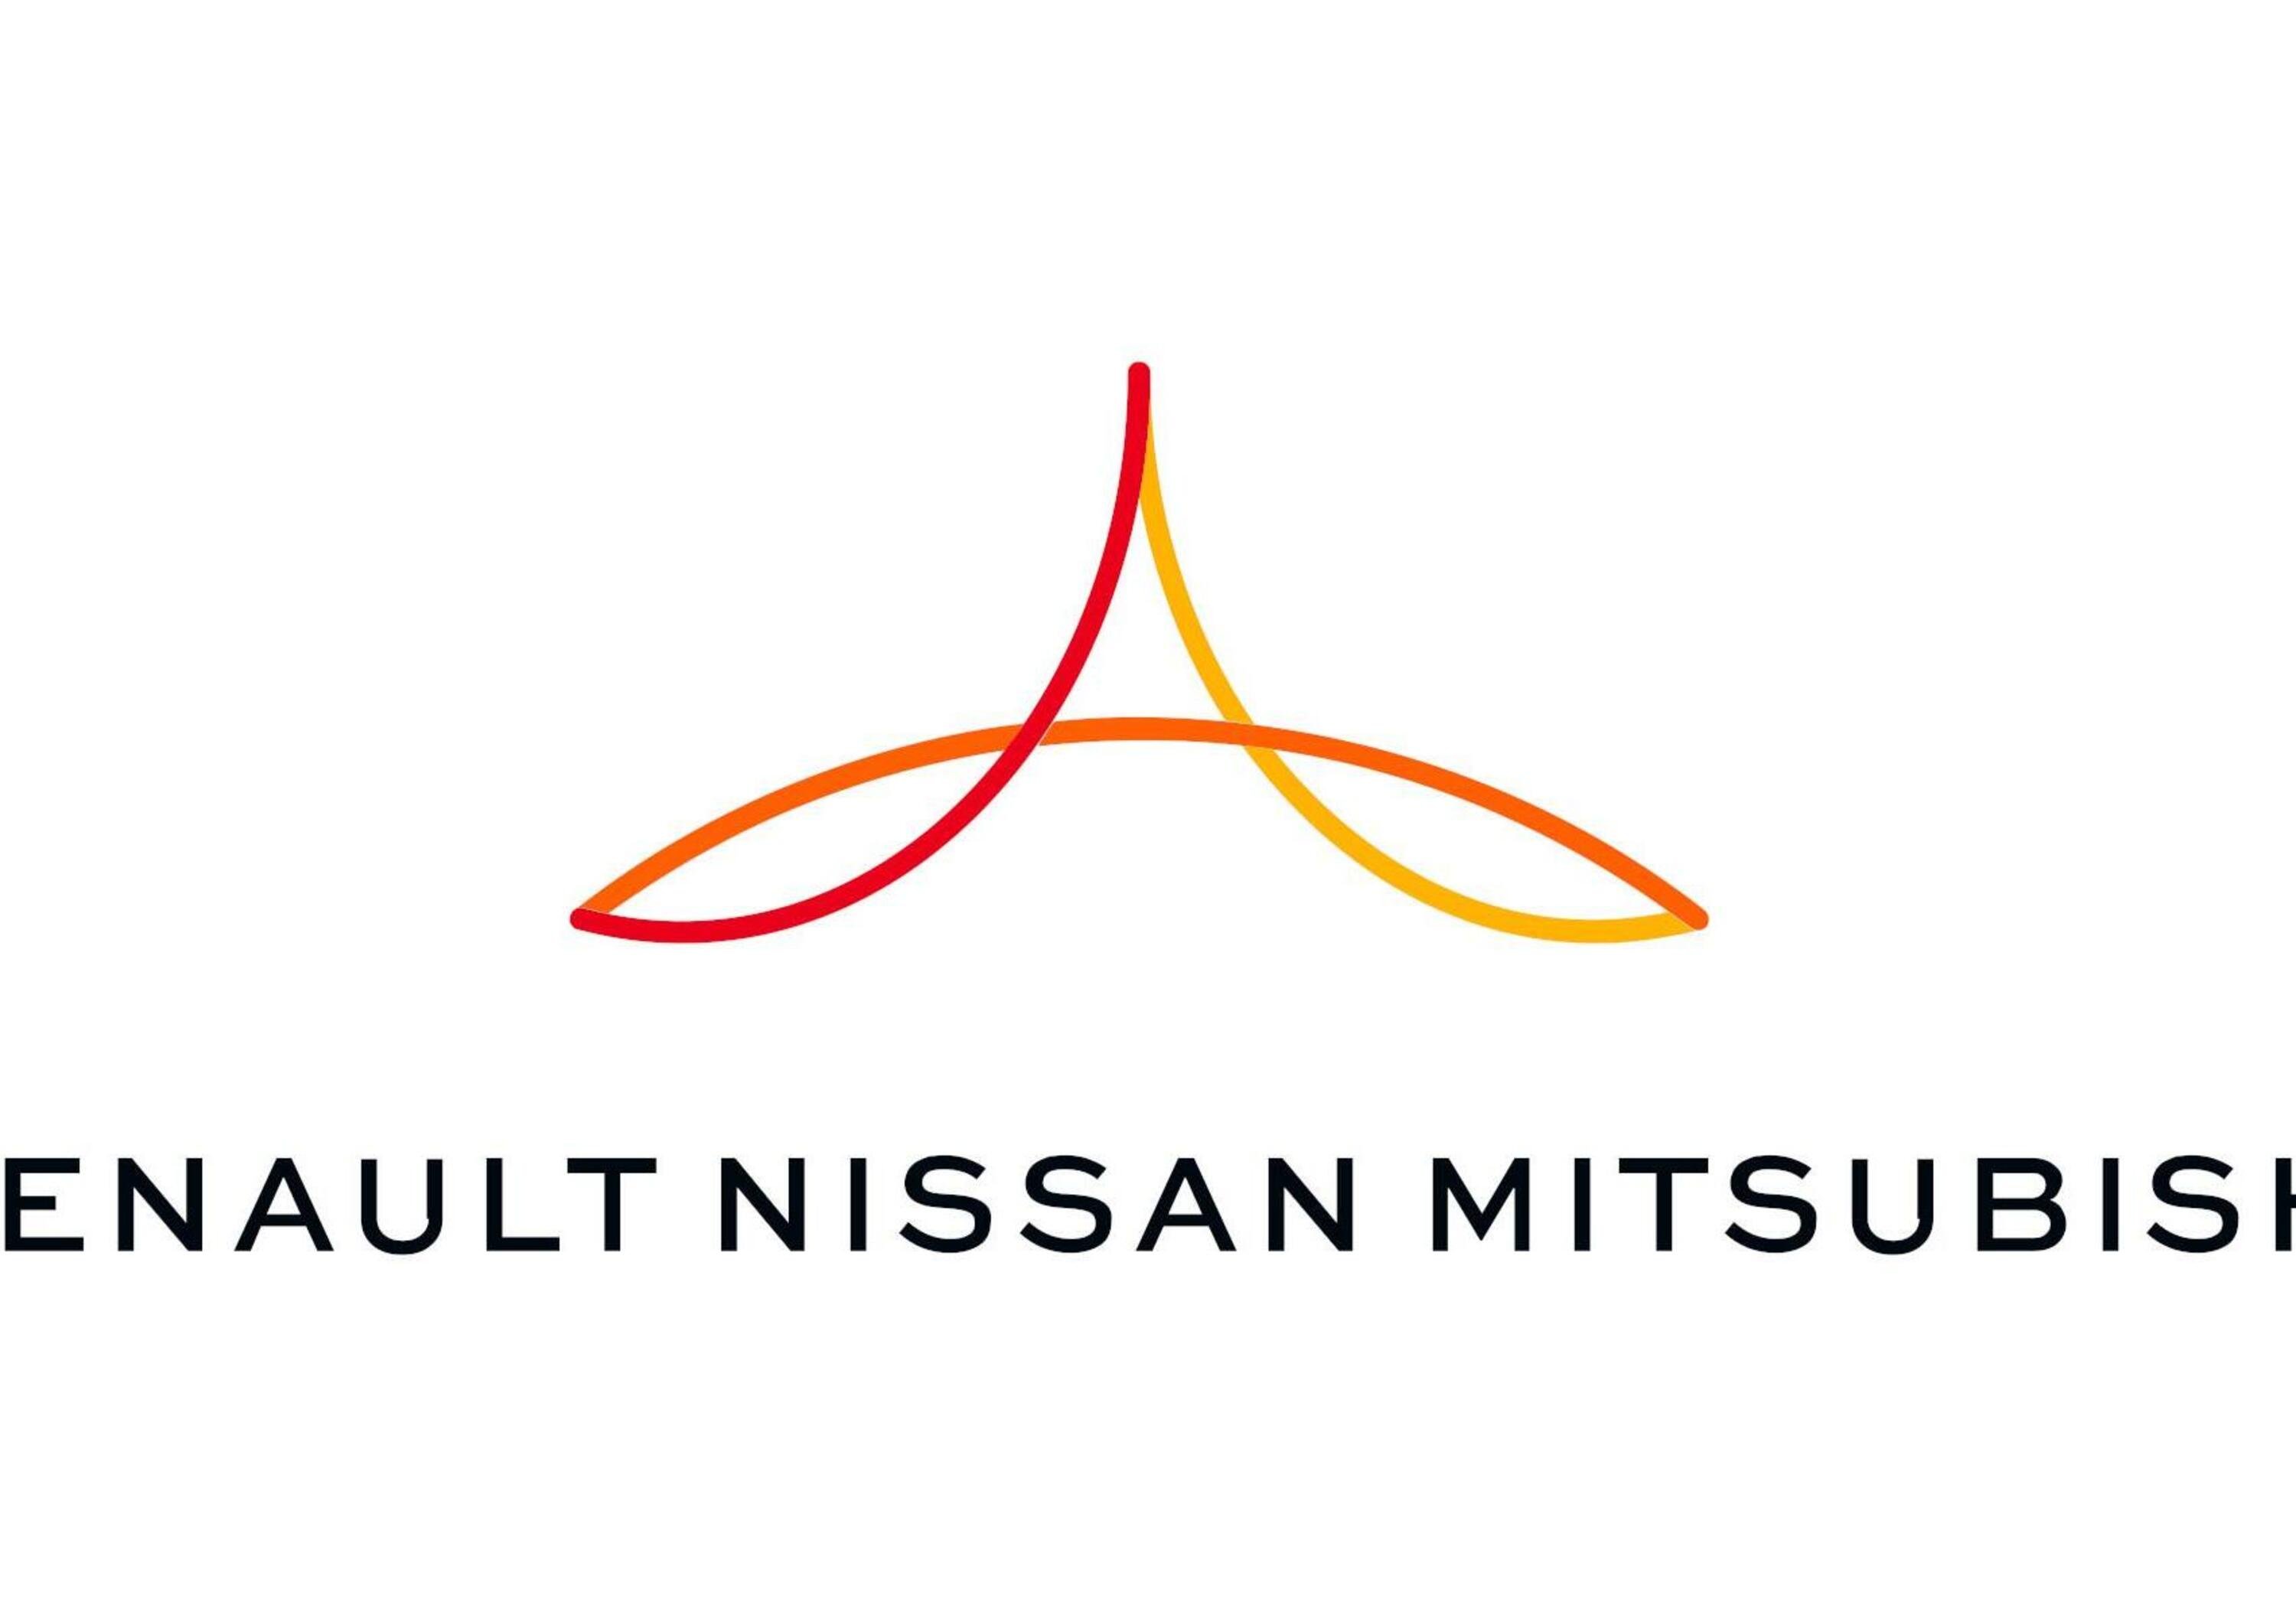 Mitsubishi corp. pronta ad acquisire il 10% di Renault